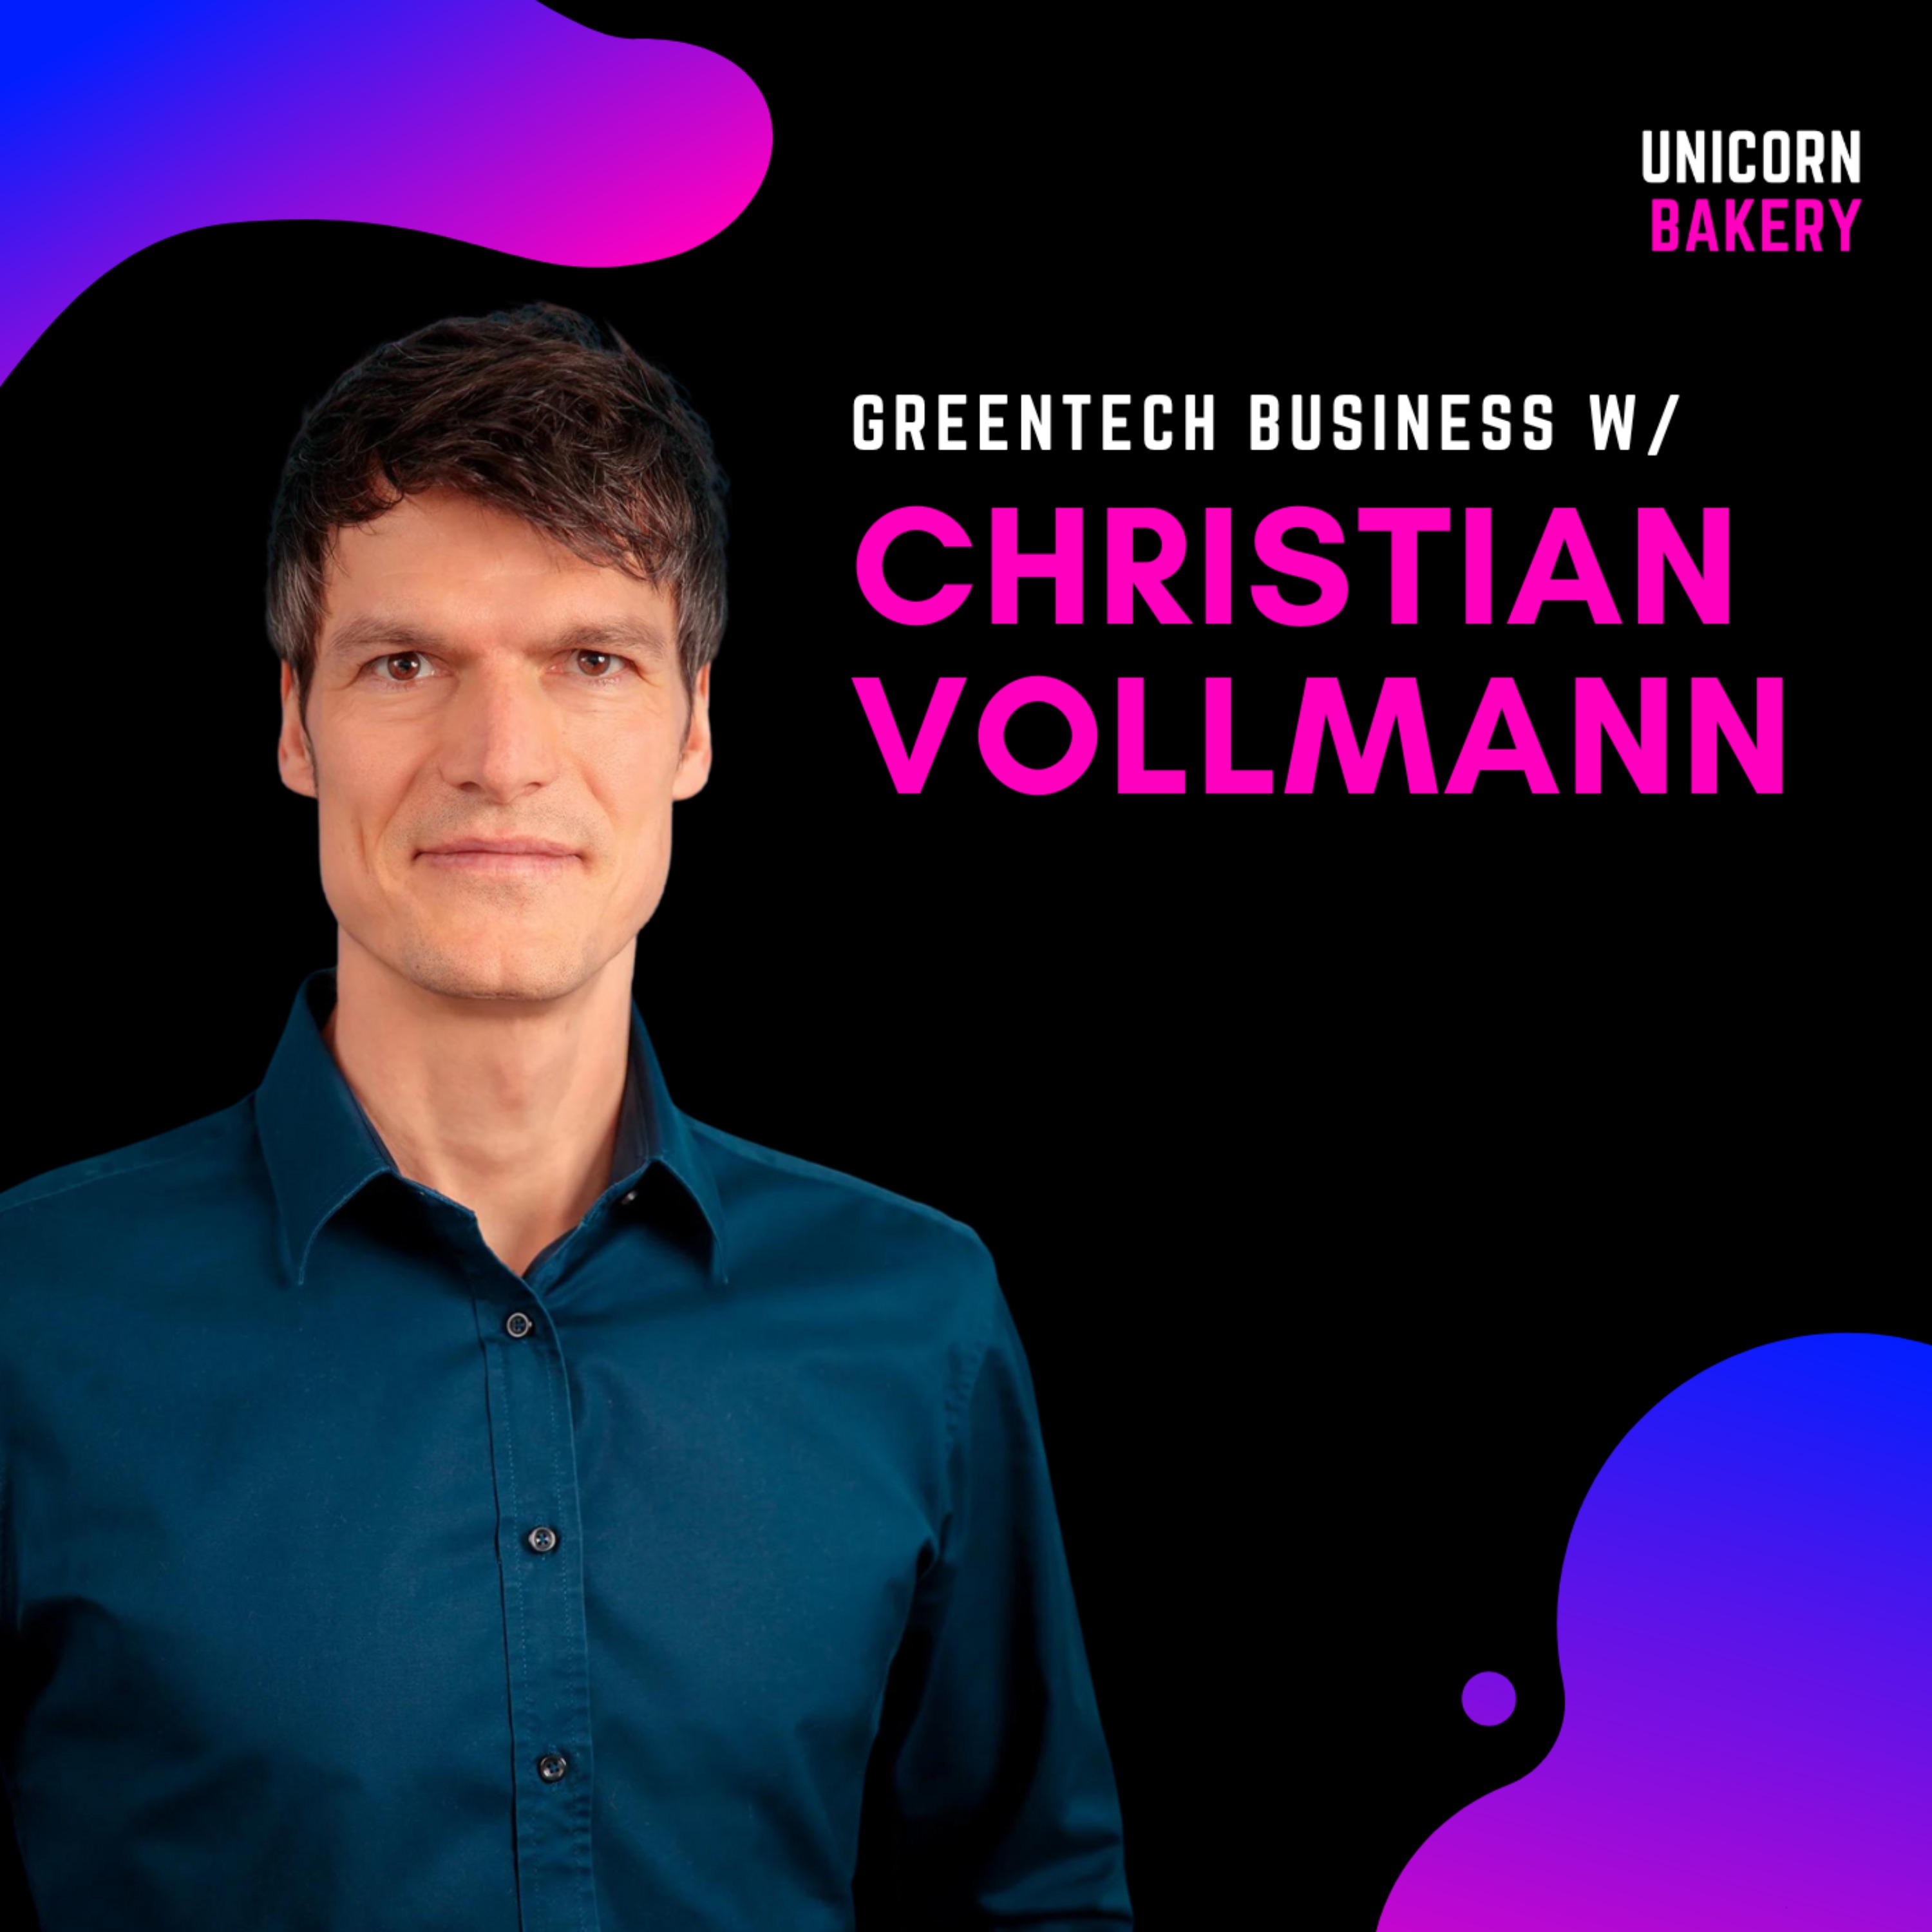 Als Business Founder zum GreenTech mit großer Vision? mit Serienunternehmer Christian Vollmann, C1 Image